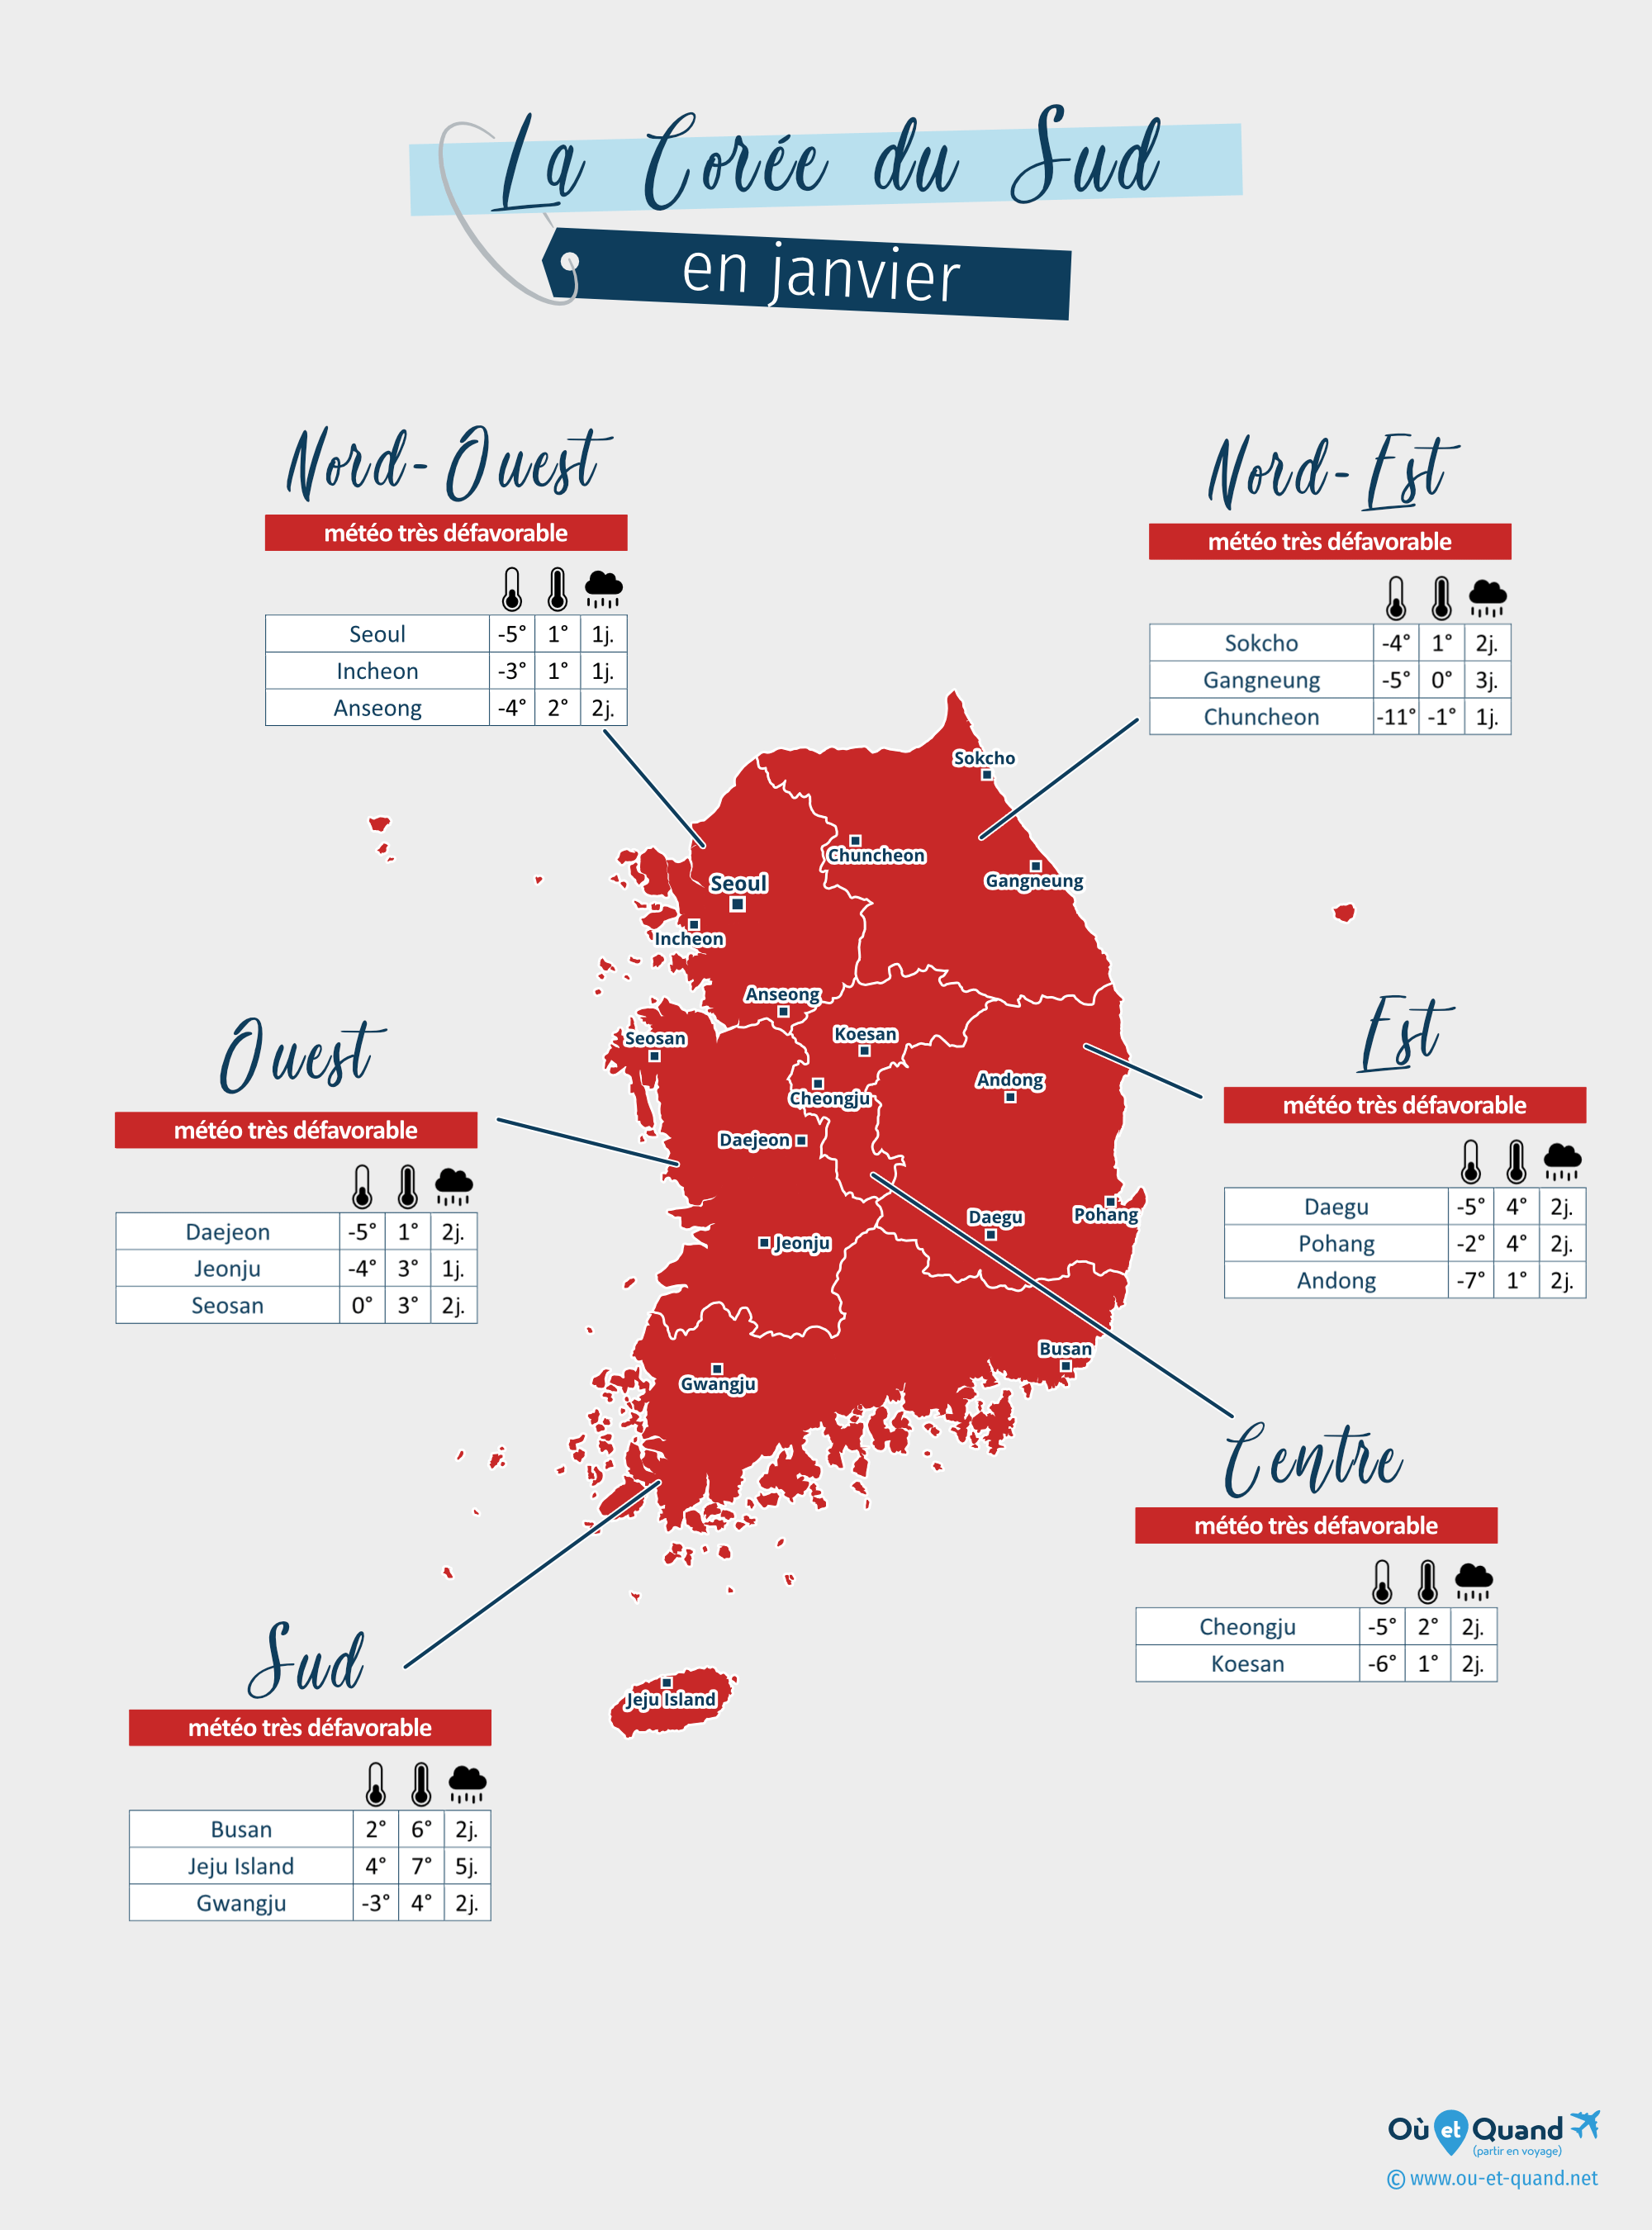 Carte de la météo en janvier dans les régions de la Corée du Sud